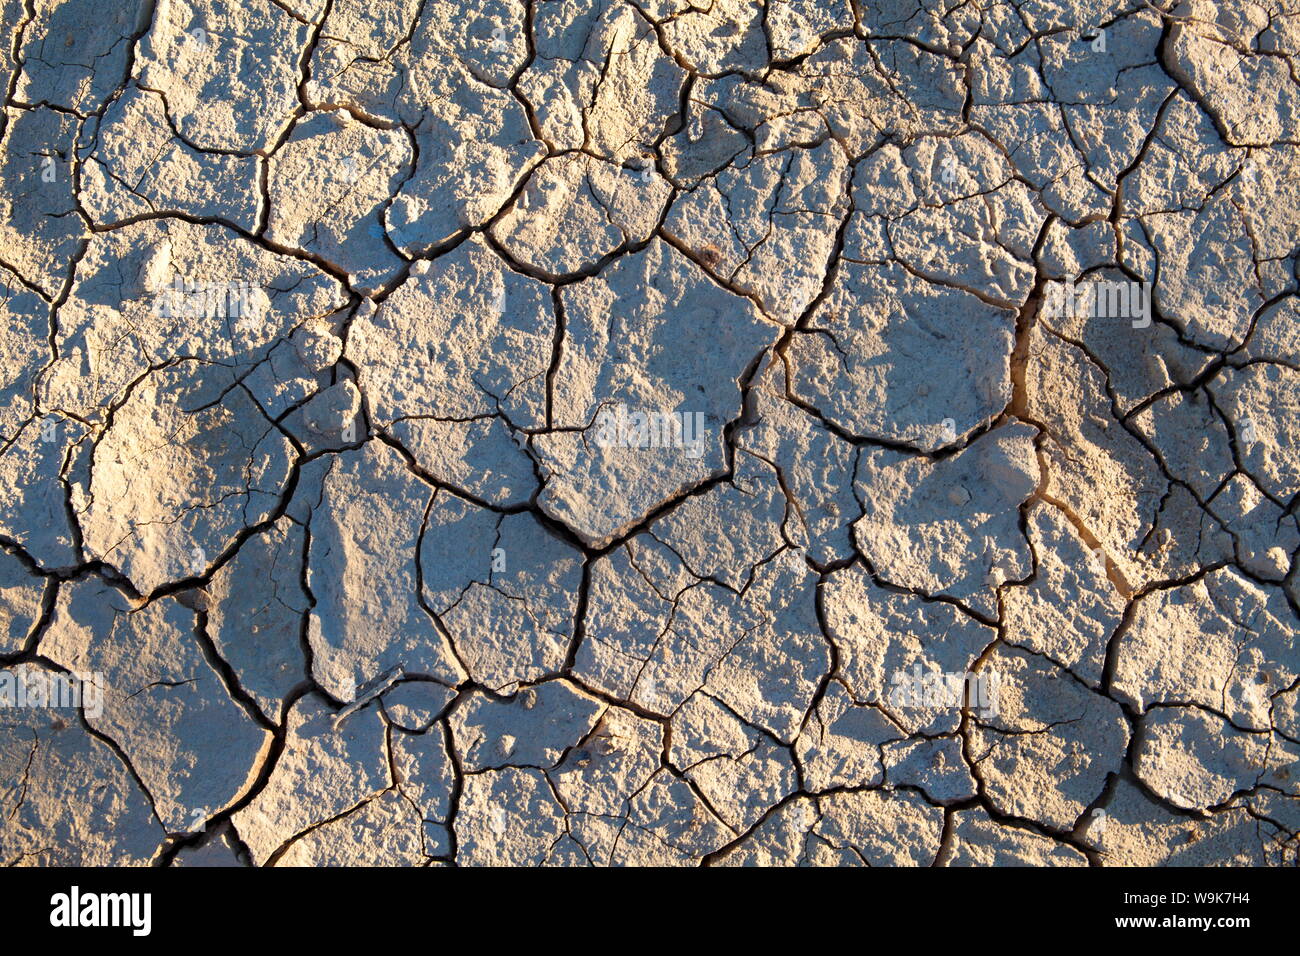 La boue séchée/cracked earth à Sossusvlei dans le désert du Namib antique à proximité de Sesriem, Namib Naukluft Park, Namibie, Afrique Banque D'Images